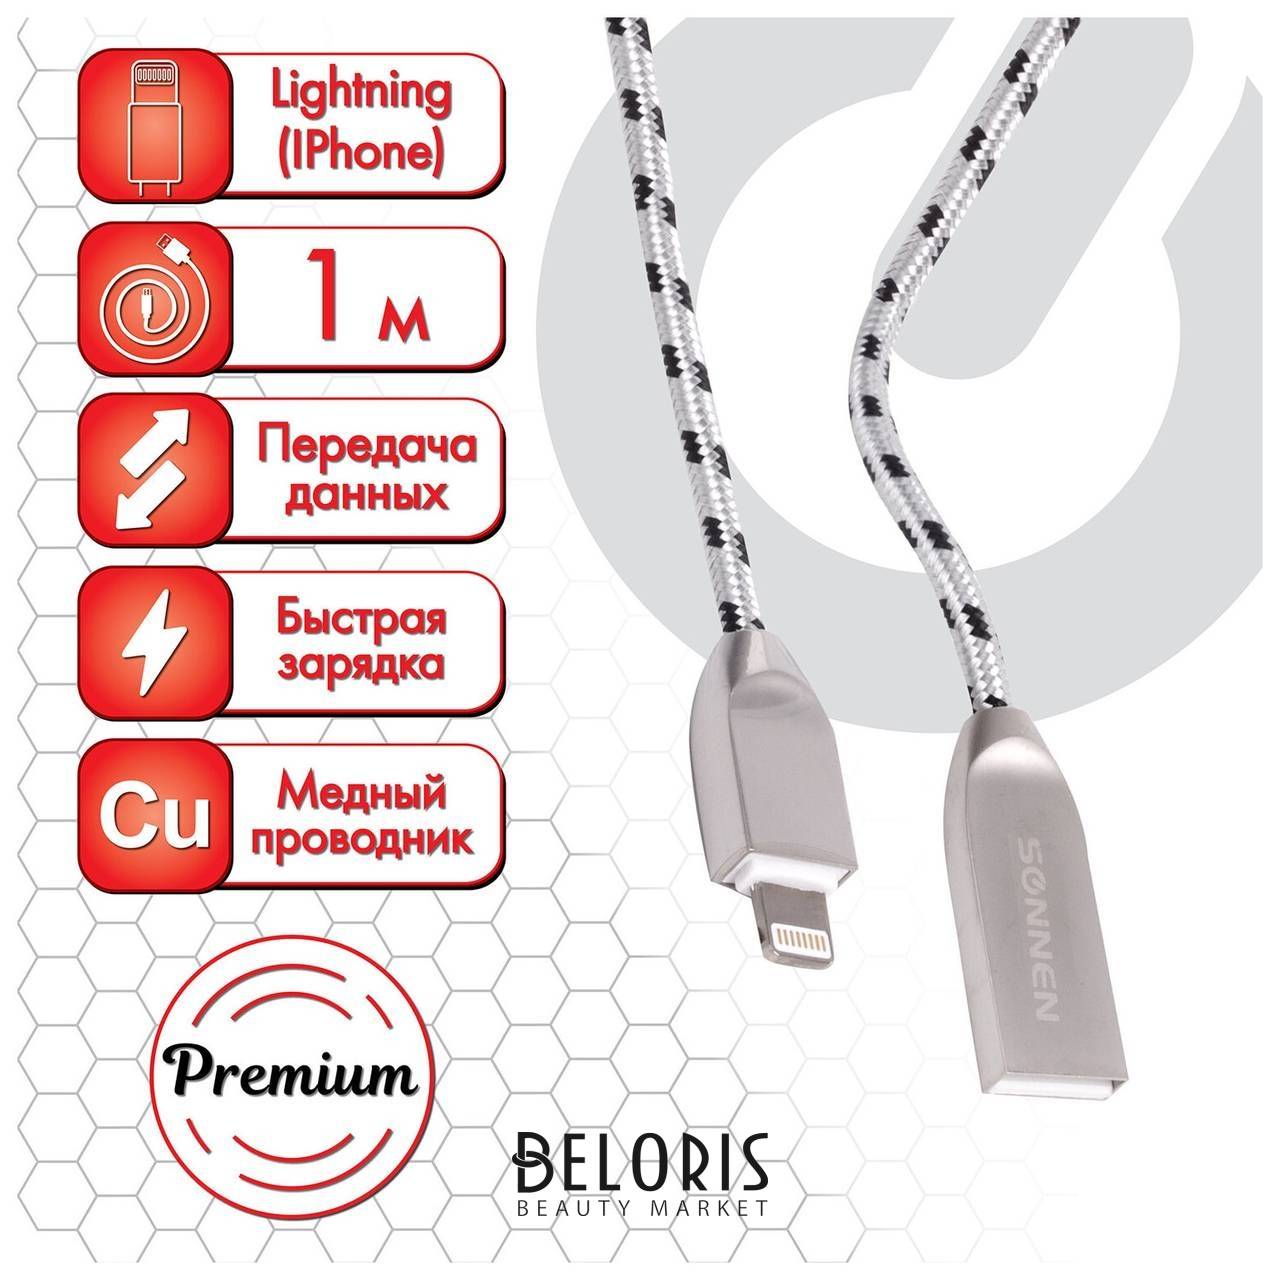 Кабель USB 2.0-lightning, 1 м, Sonnen Premium, медь, для Iphone/ipad, передача данных и зарядка, 513126 Sonnen